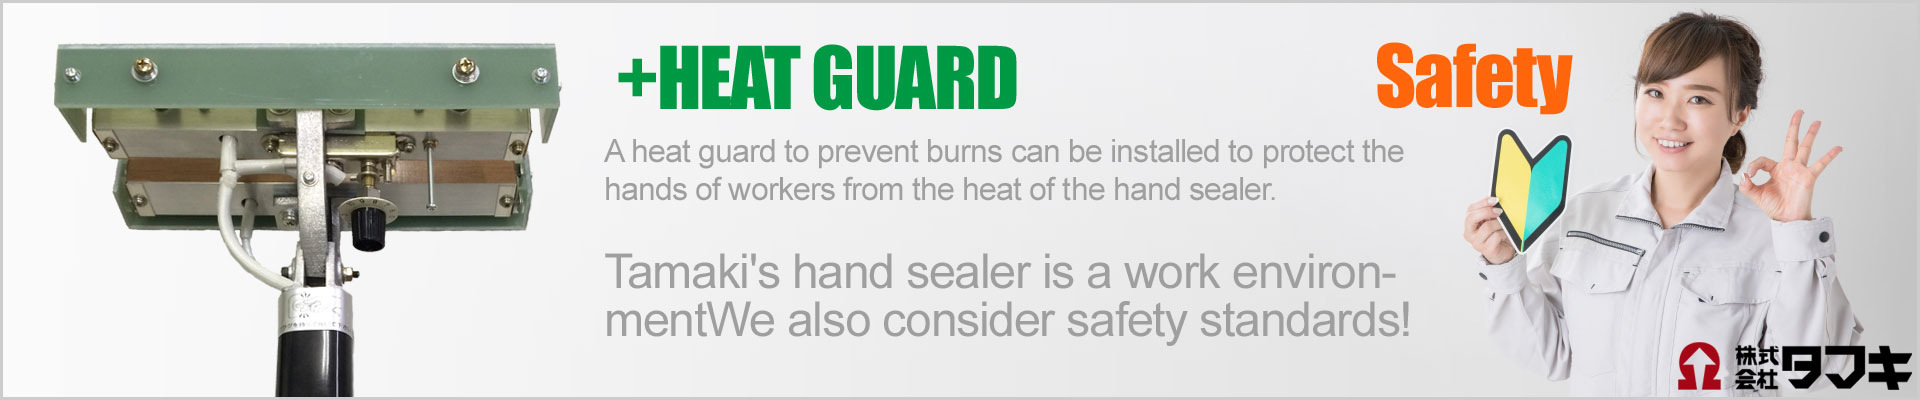 Heat guard